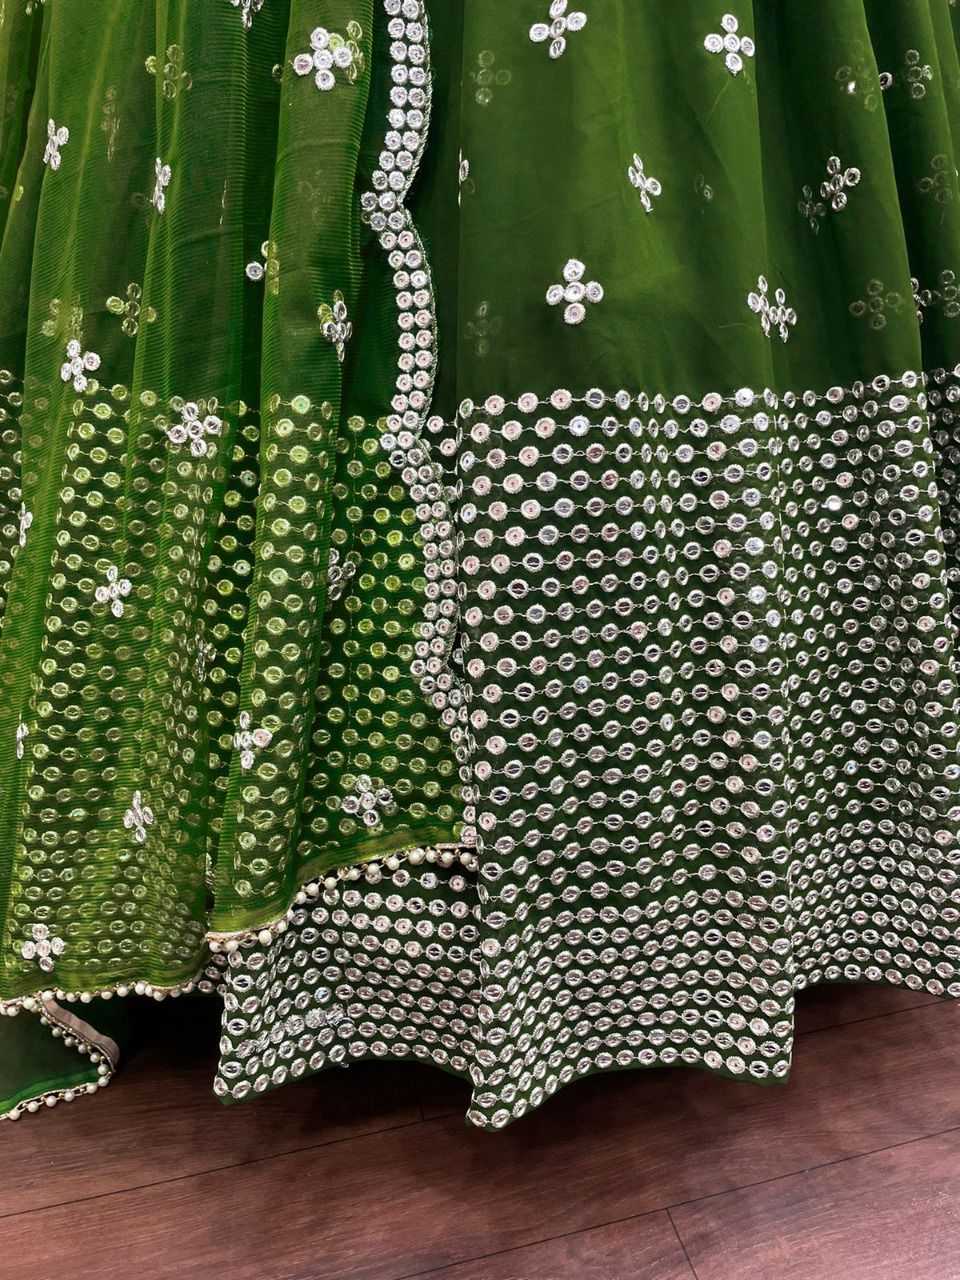 Green Color Lehenga Choli For Wedding Buy now